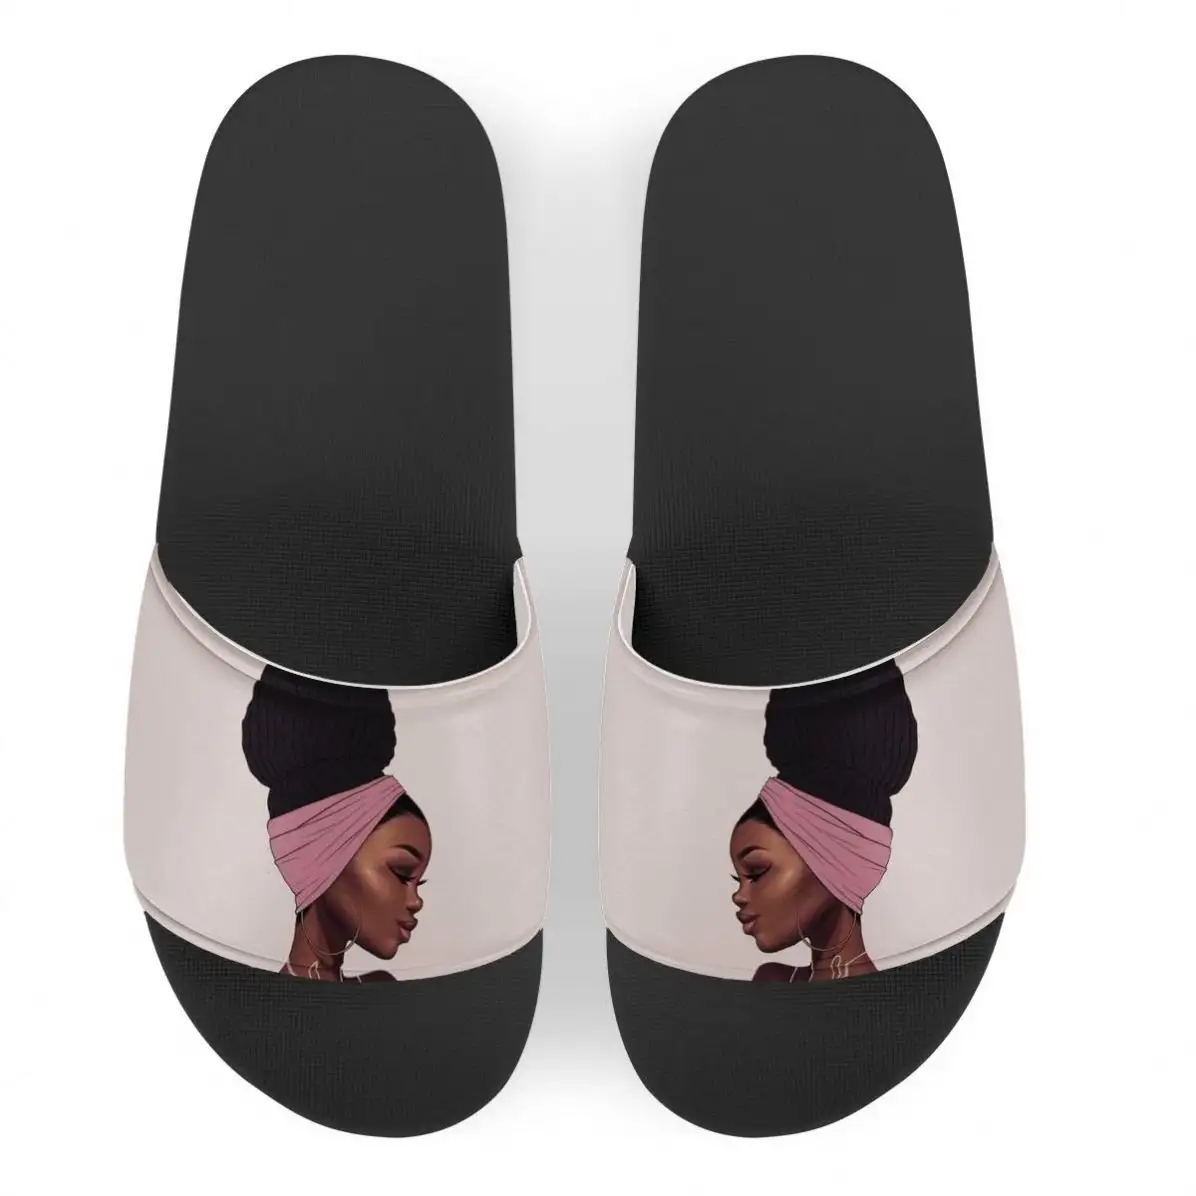 POD Schönheit Afrikanische Mädchen Muster Bequem Große Größe Indoor Hausschuhe Für Damen Pool Rutsche Sandalen Plattform Schuhe Hausschuhe